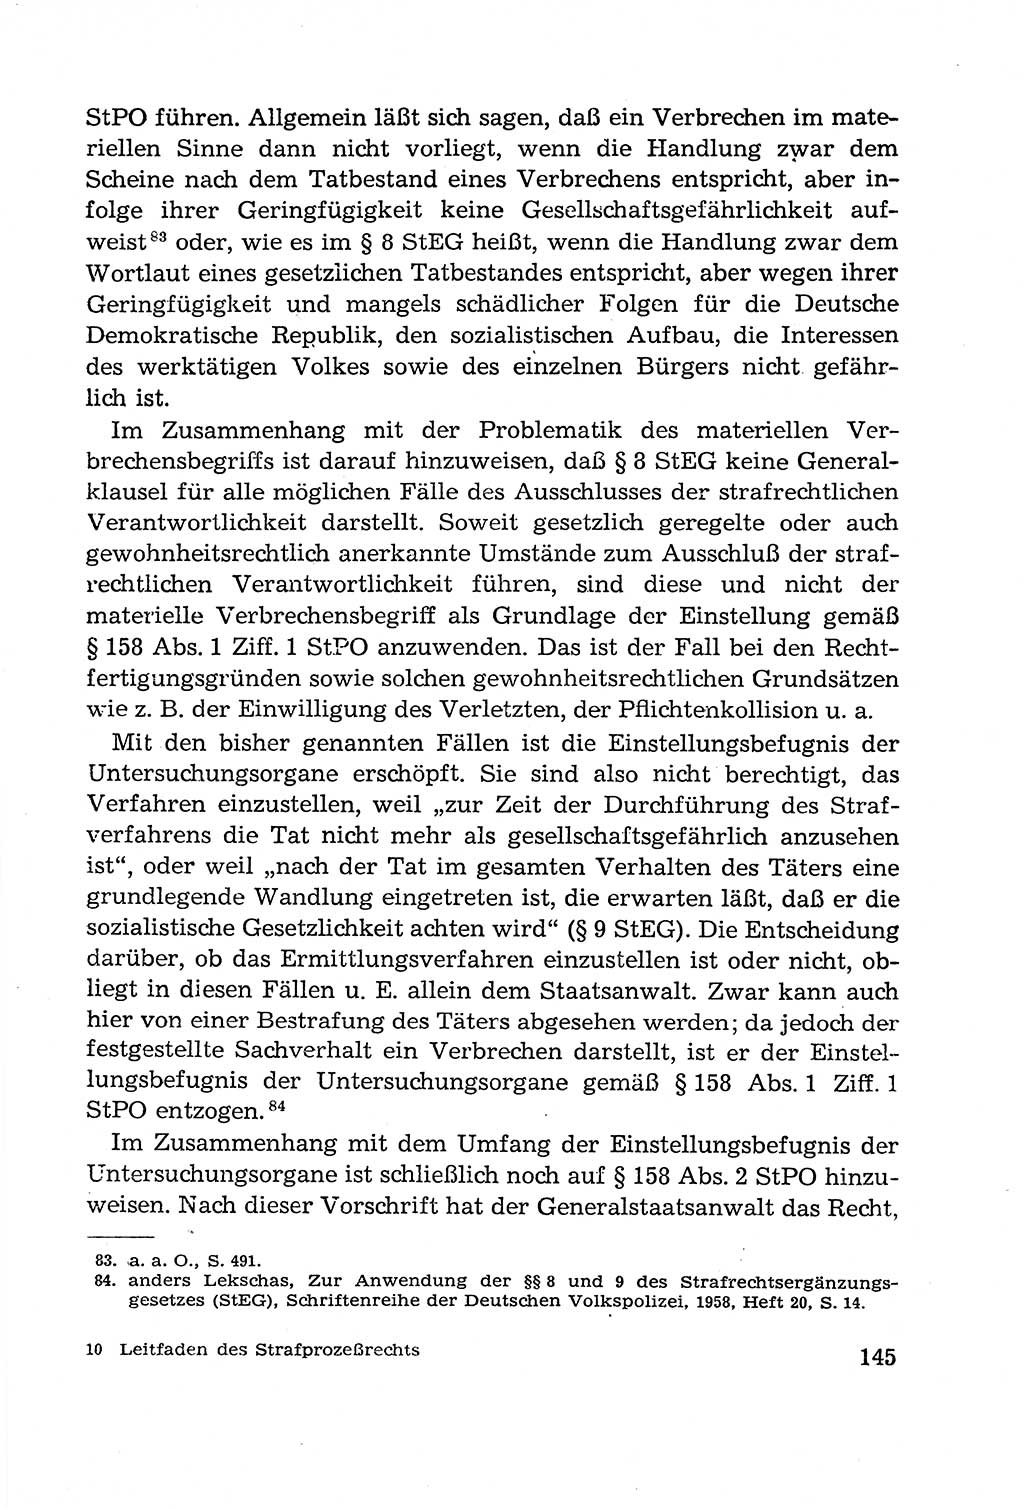 Leitfaden des Strafprozeßrechts der Deutschen Demokratischen Republik (DDR) 1959, Seite 145 (LF StPR DDR 1959, S. 145)